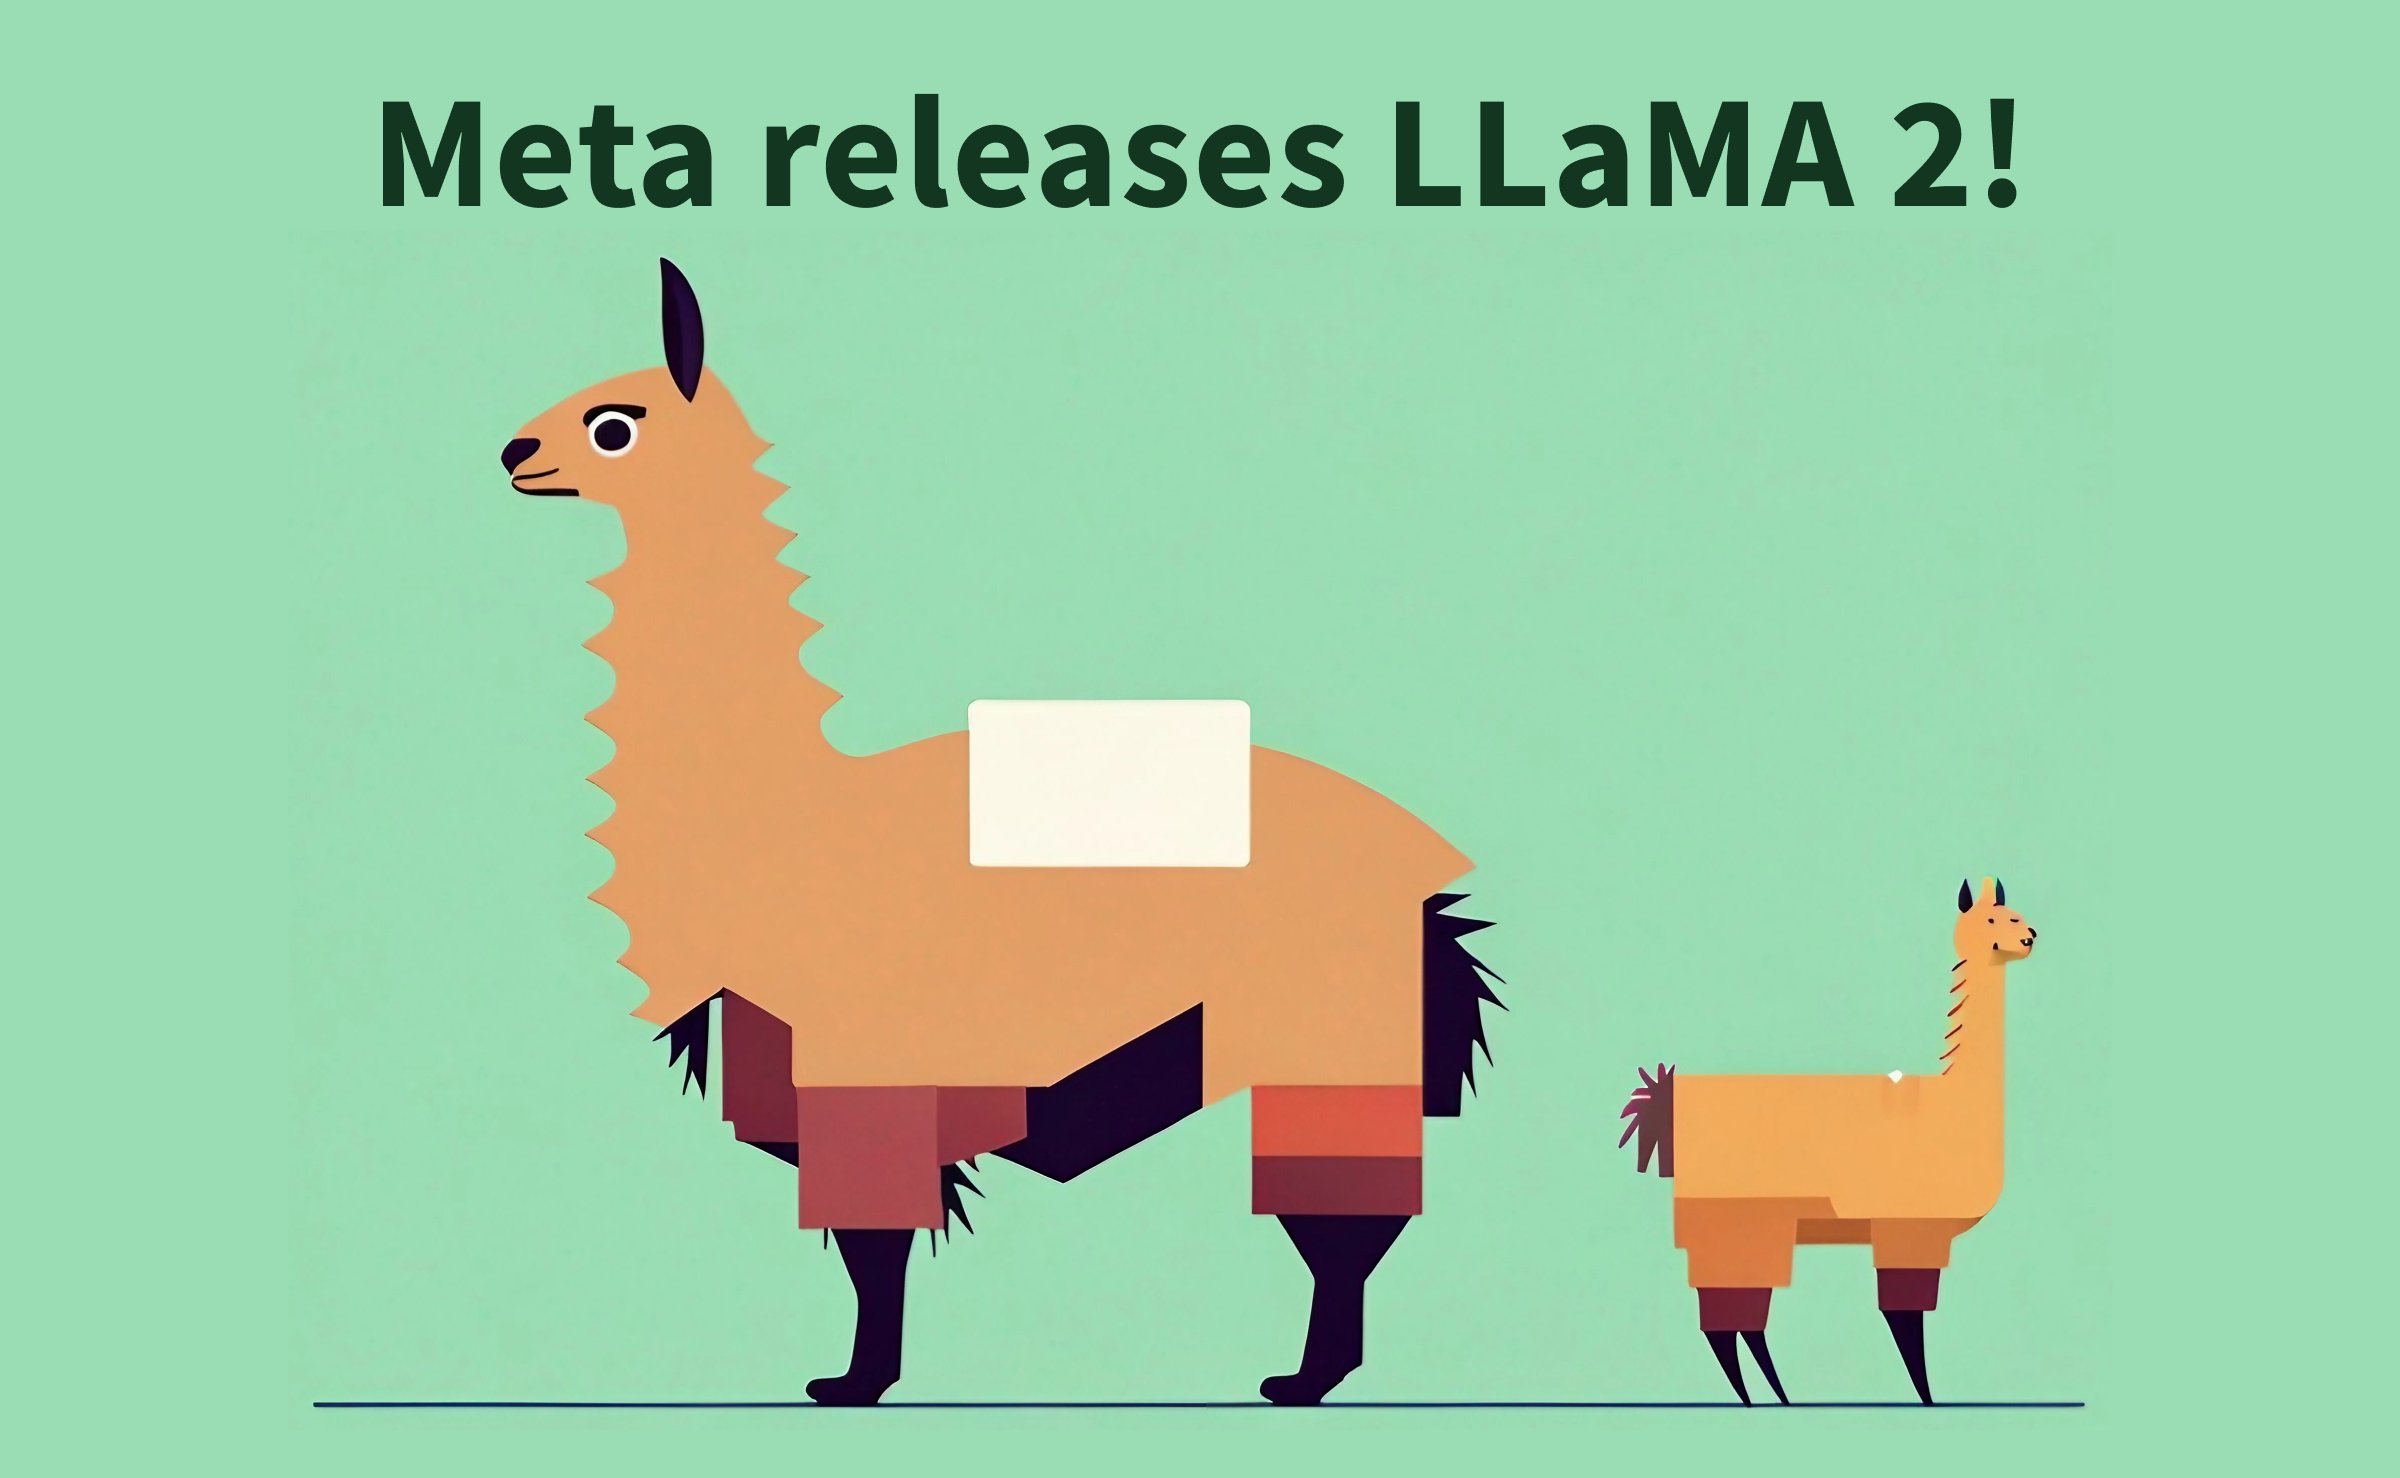 Meta : मेटा के ओपन सोर्स लामा ने एआई हॉर्स रेस को परेशान कर दिया